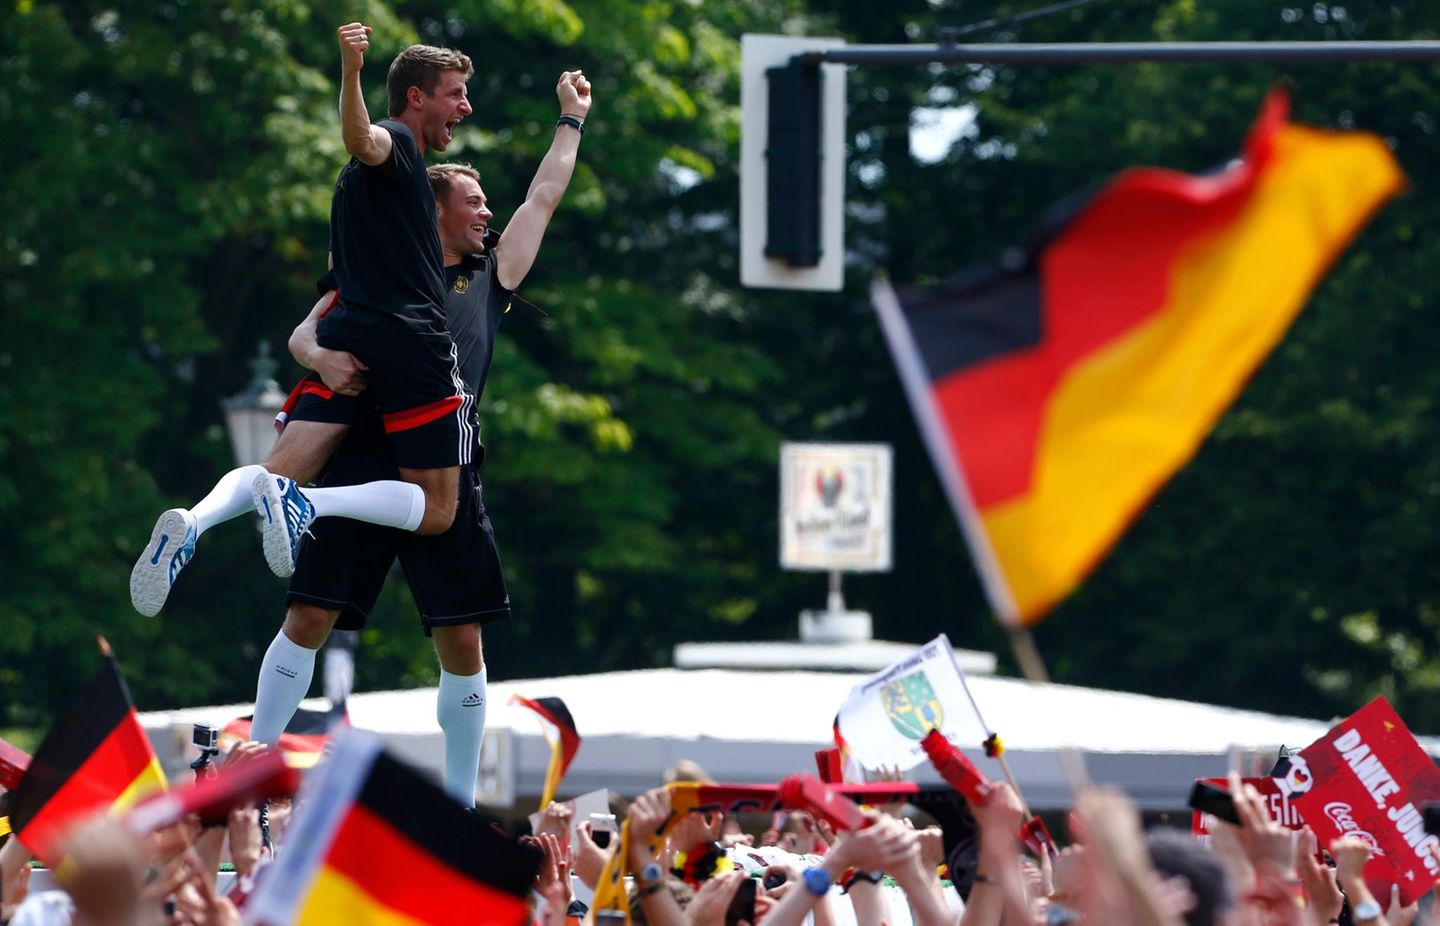 Manuel Neuer und Thomas Müller scheinen vor lauter Jubel auf der Fanmeile fast zu schweben.